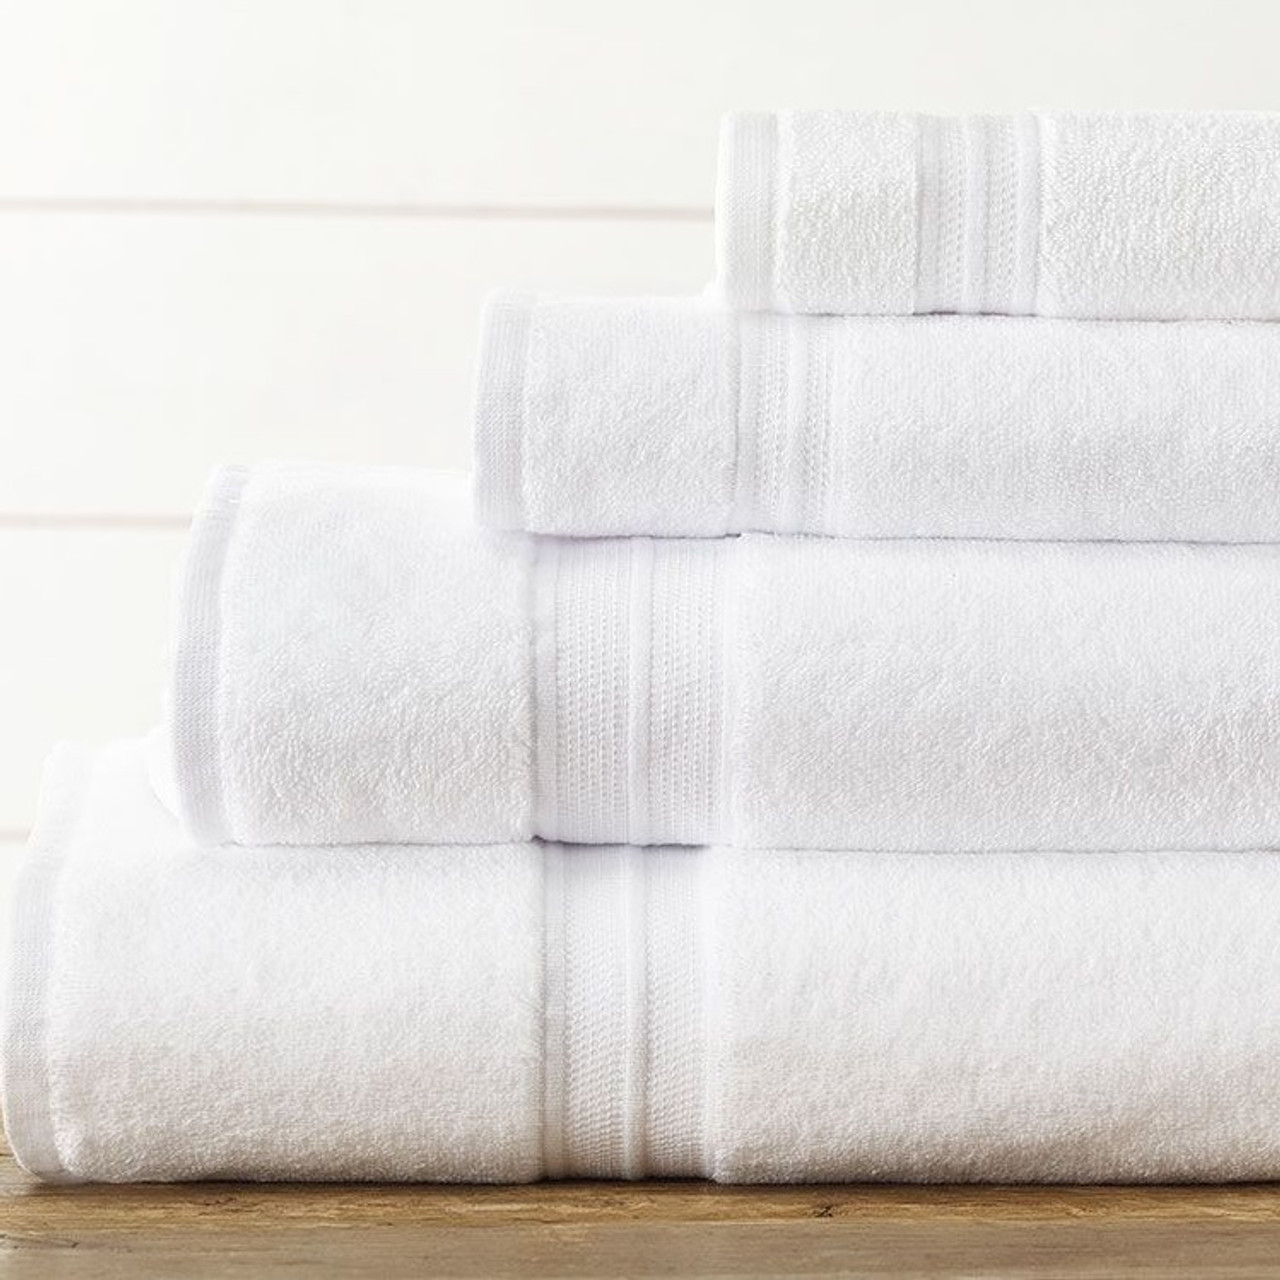 Bathroom Towel Set (27x54) Hand Towel (16x30) 2 washcloths (13x13)